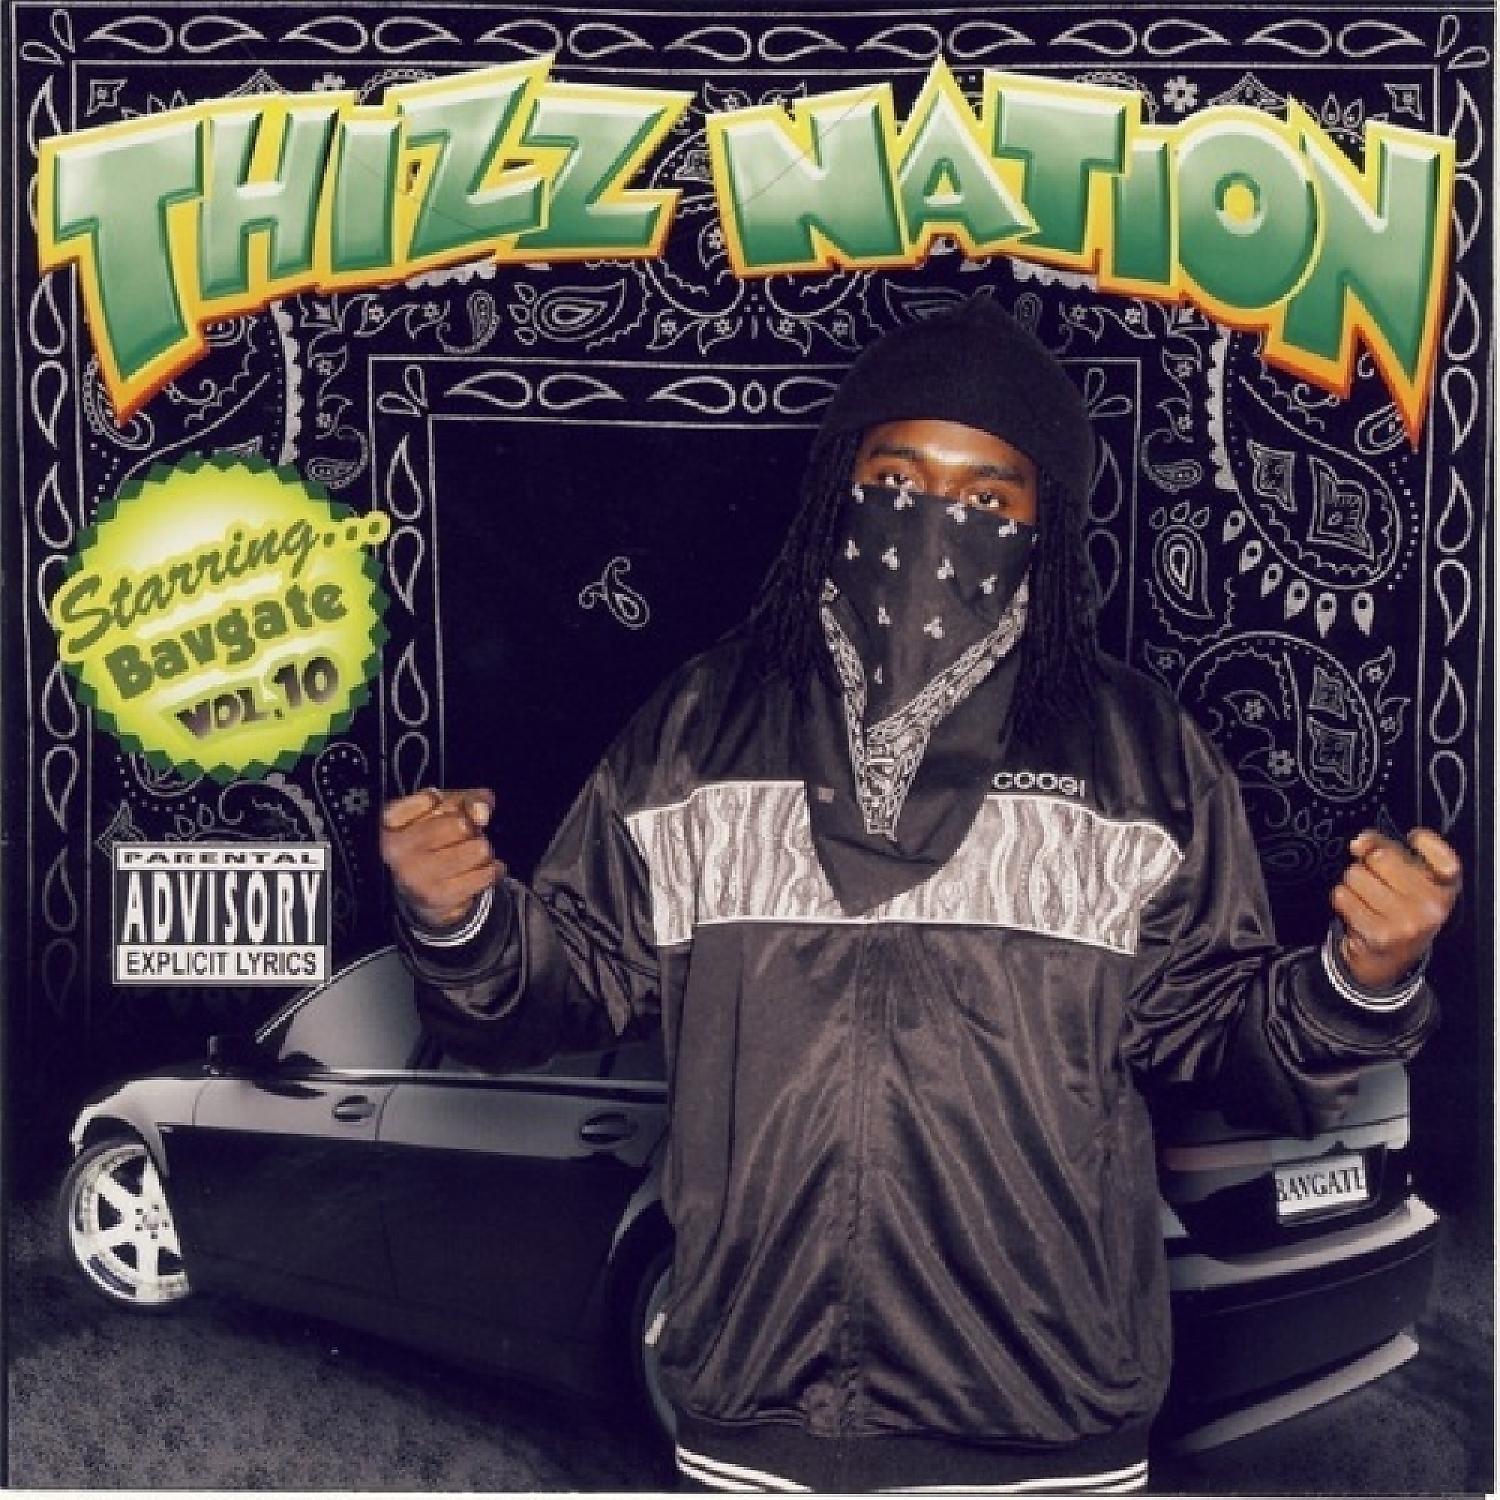 Постер альбома Thizz Nation Vol 10 Starring Bavgate